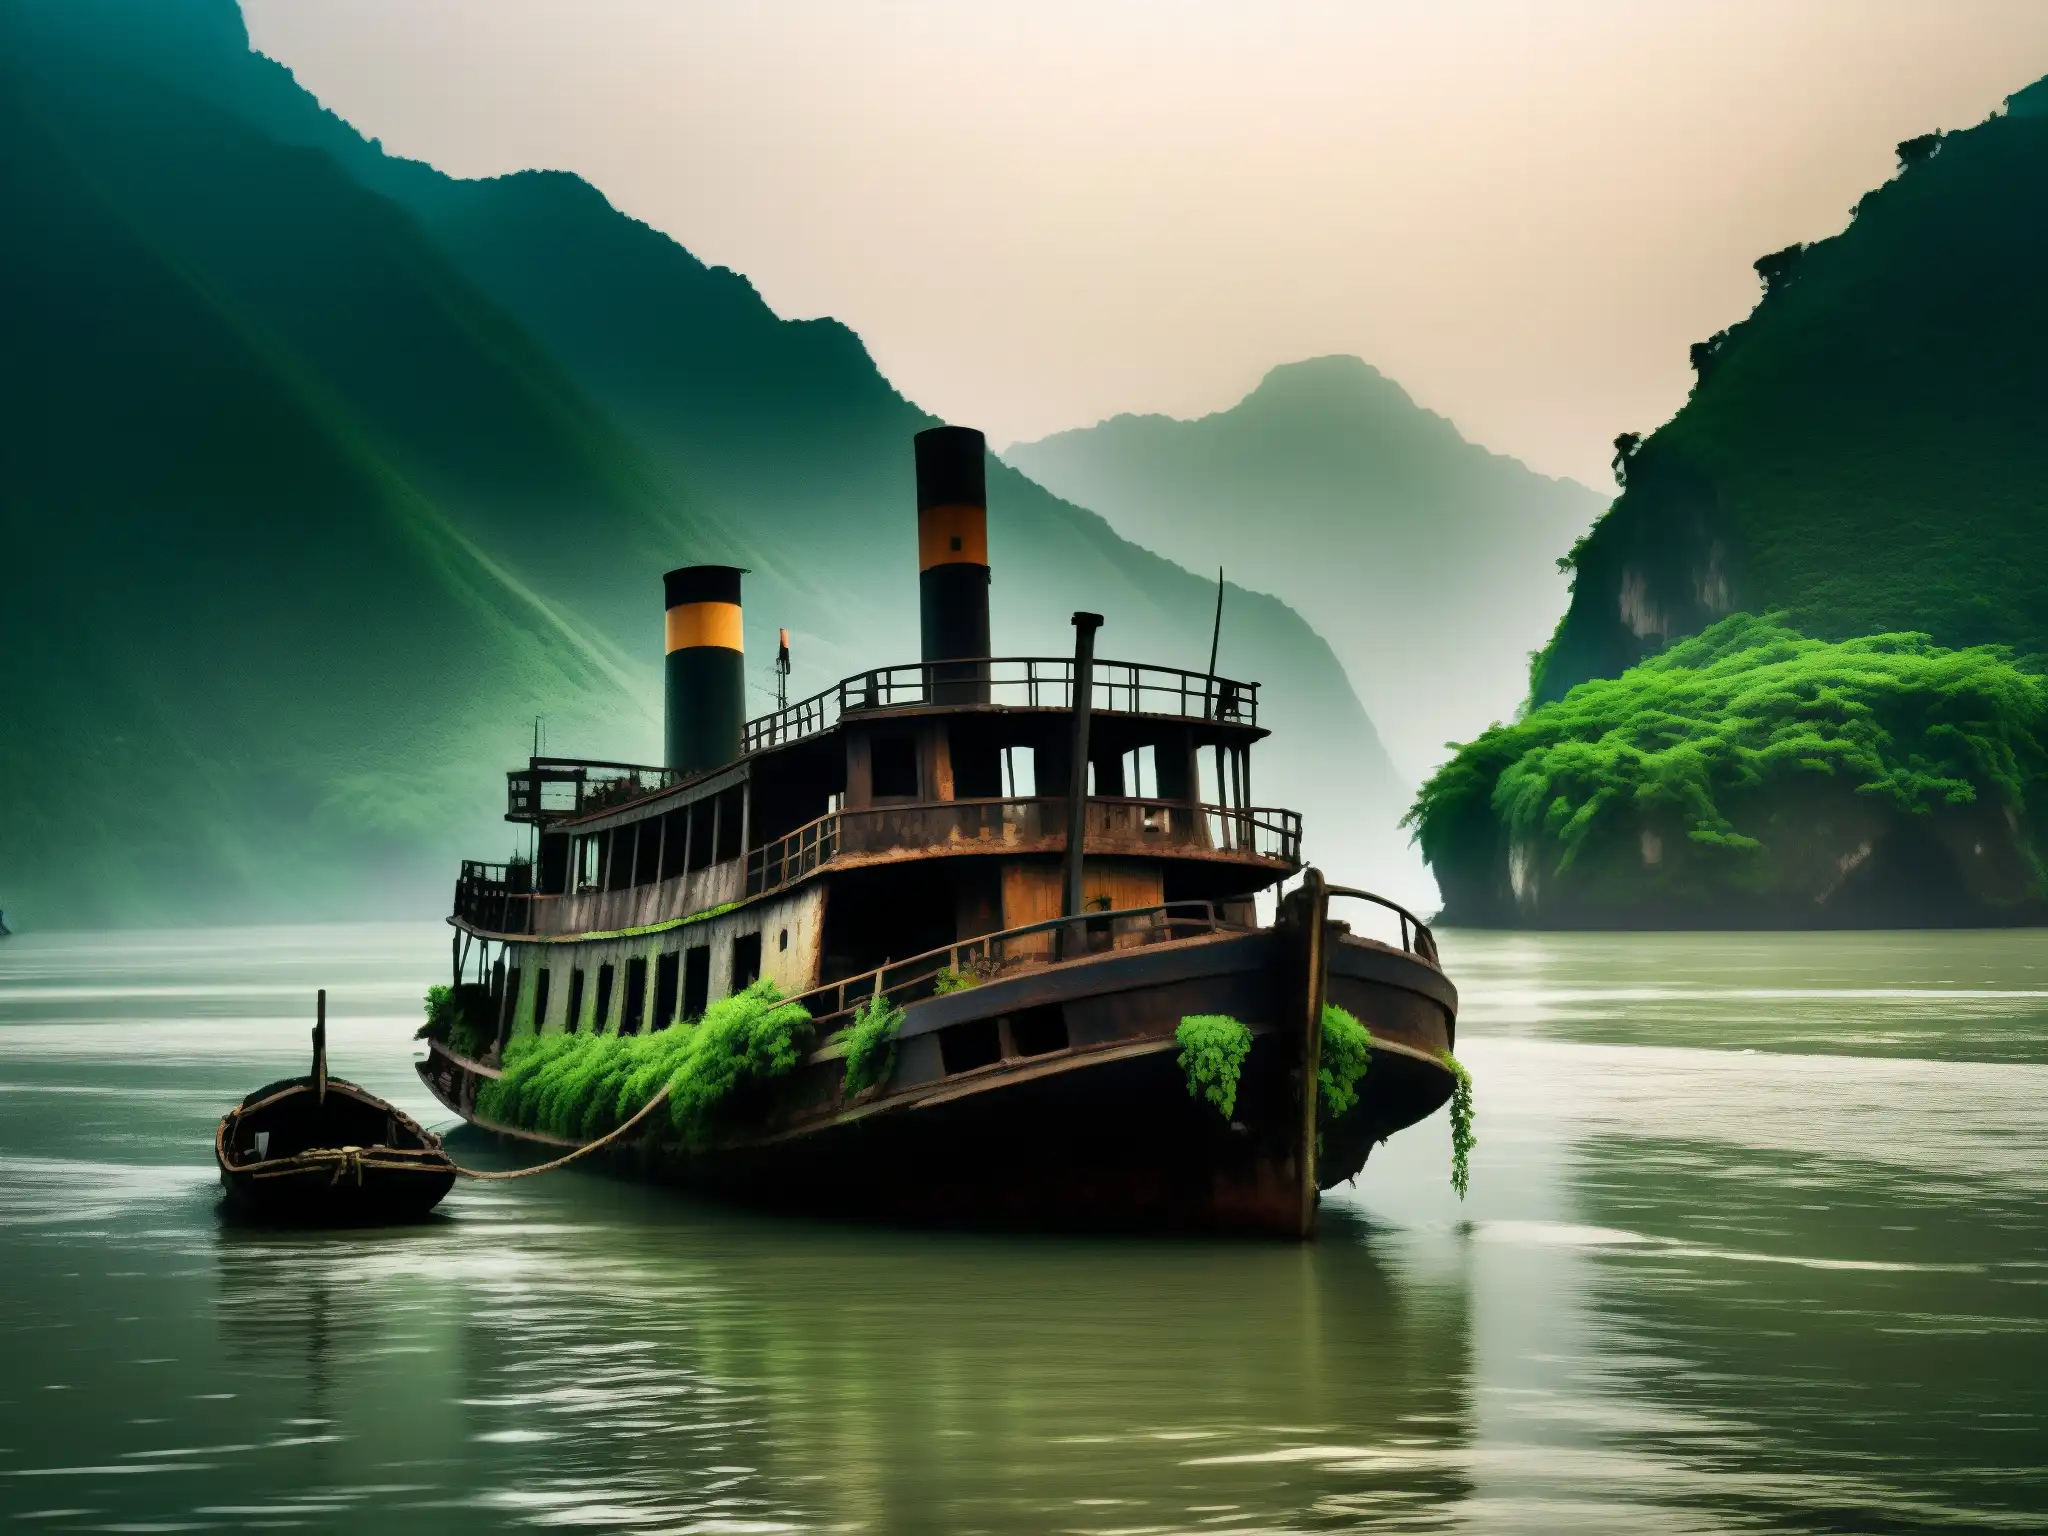 El barco fantasma en el río Yangtsé evoca misterio y nostalgia entre la bruma